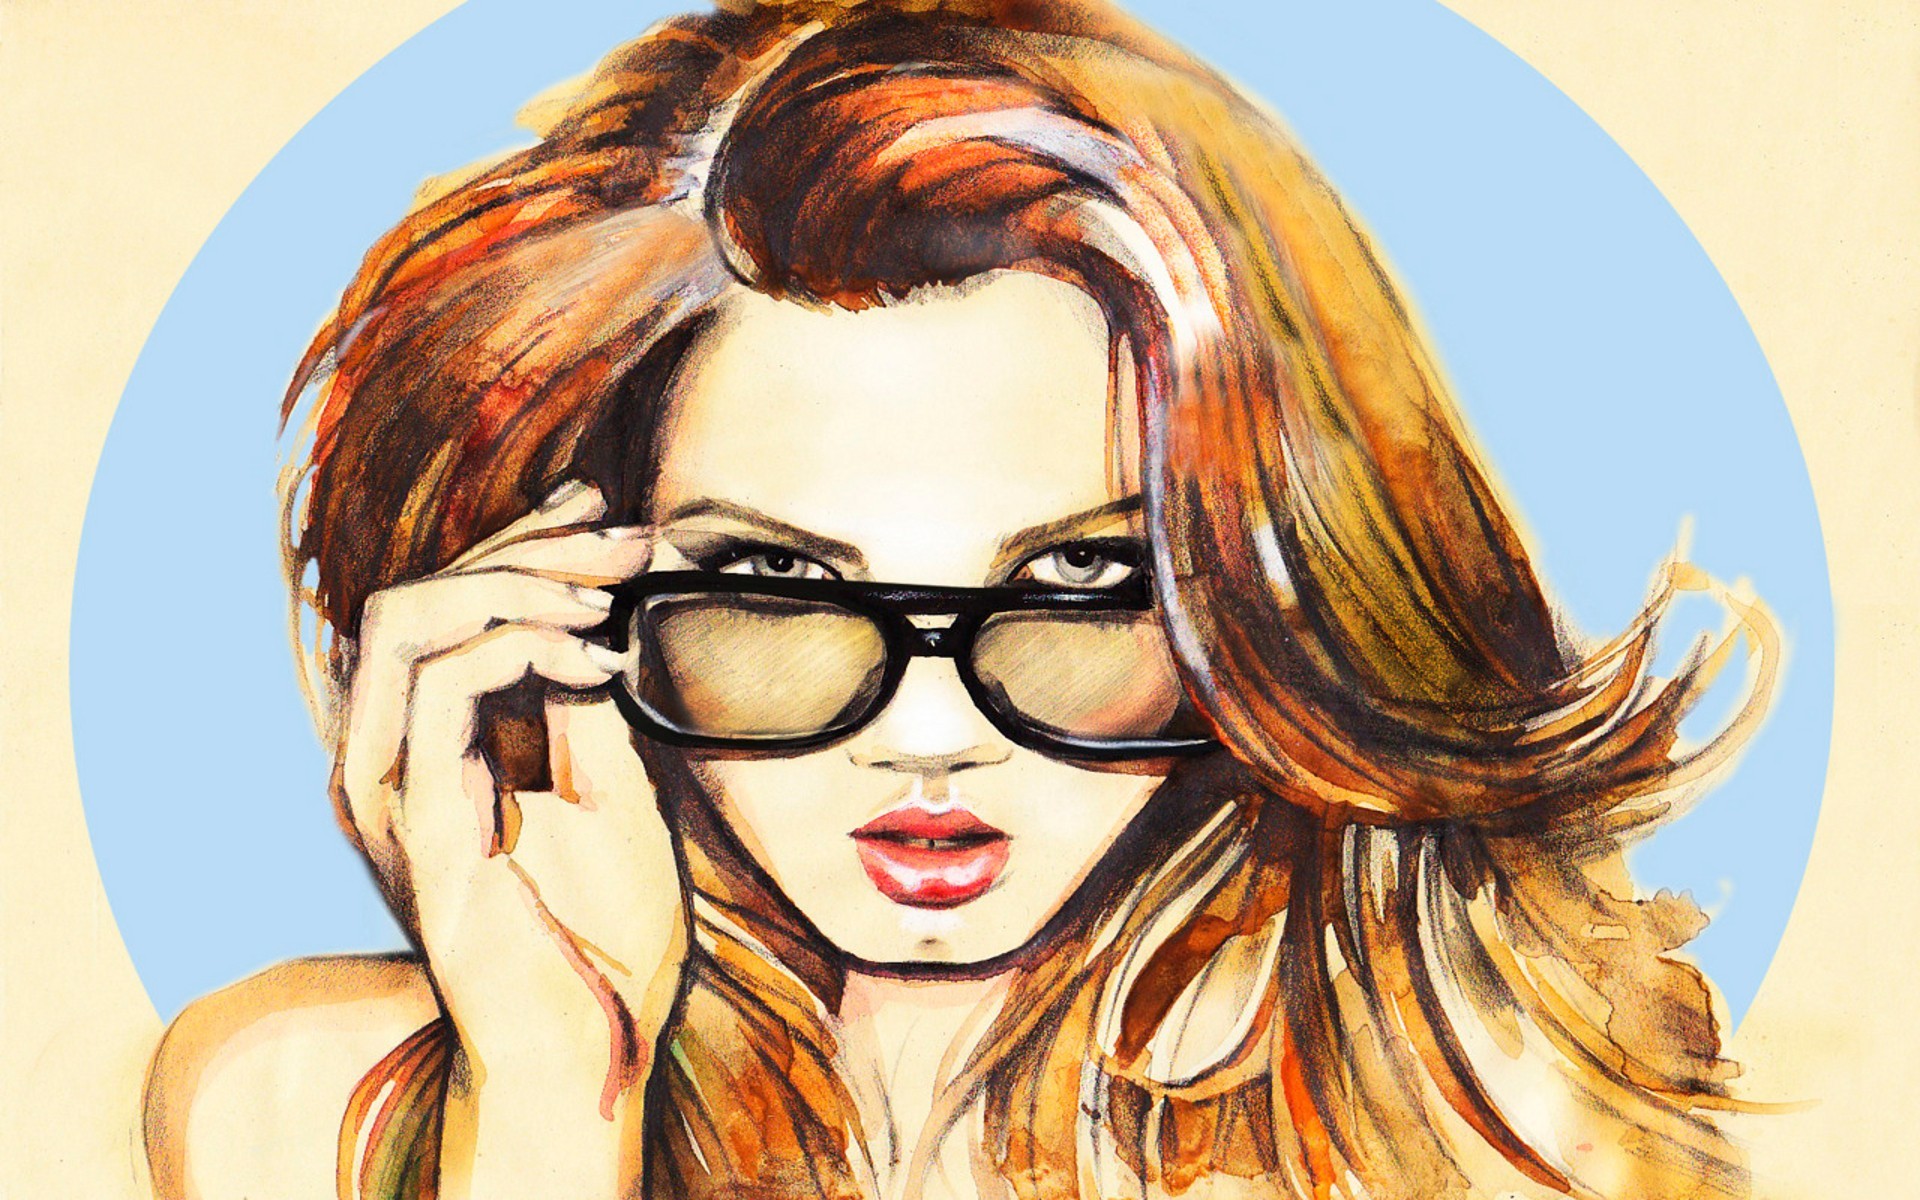 Картинка на аватарку для женщины прикольные. Рисунок девушки. Девушка в очках. Красивые девушки в очках. Картинки девушек рисунки.